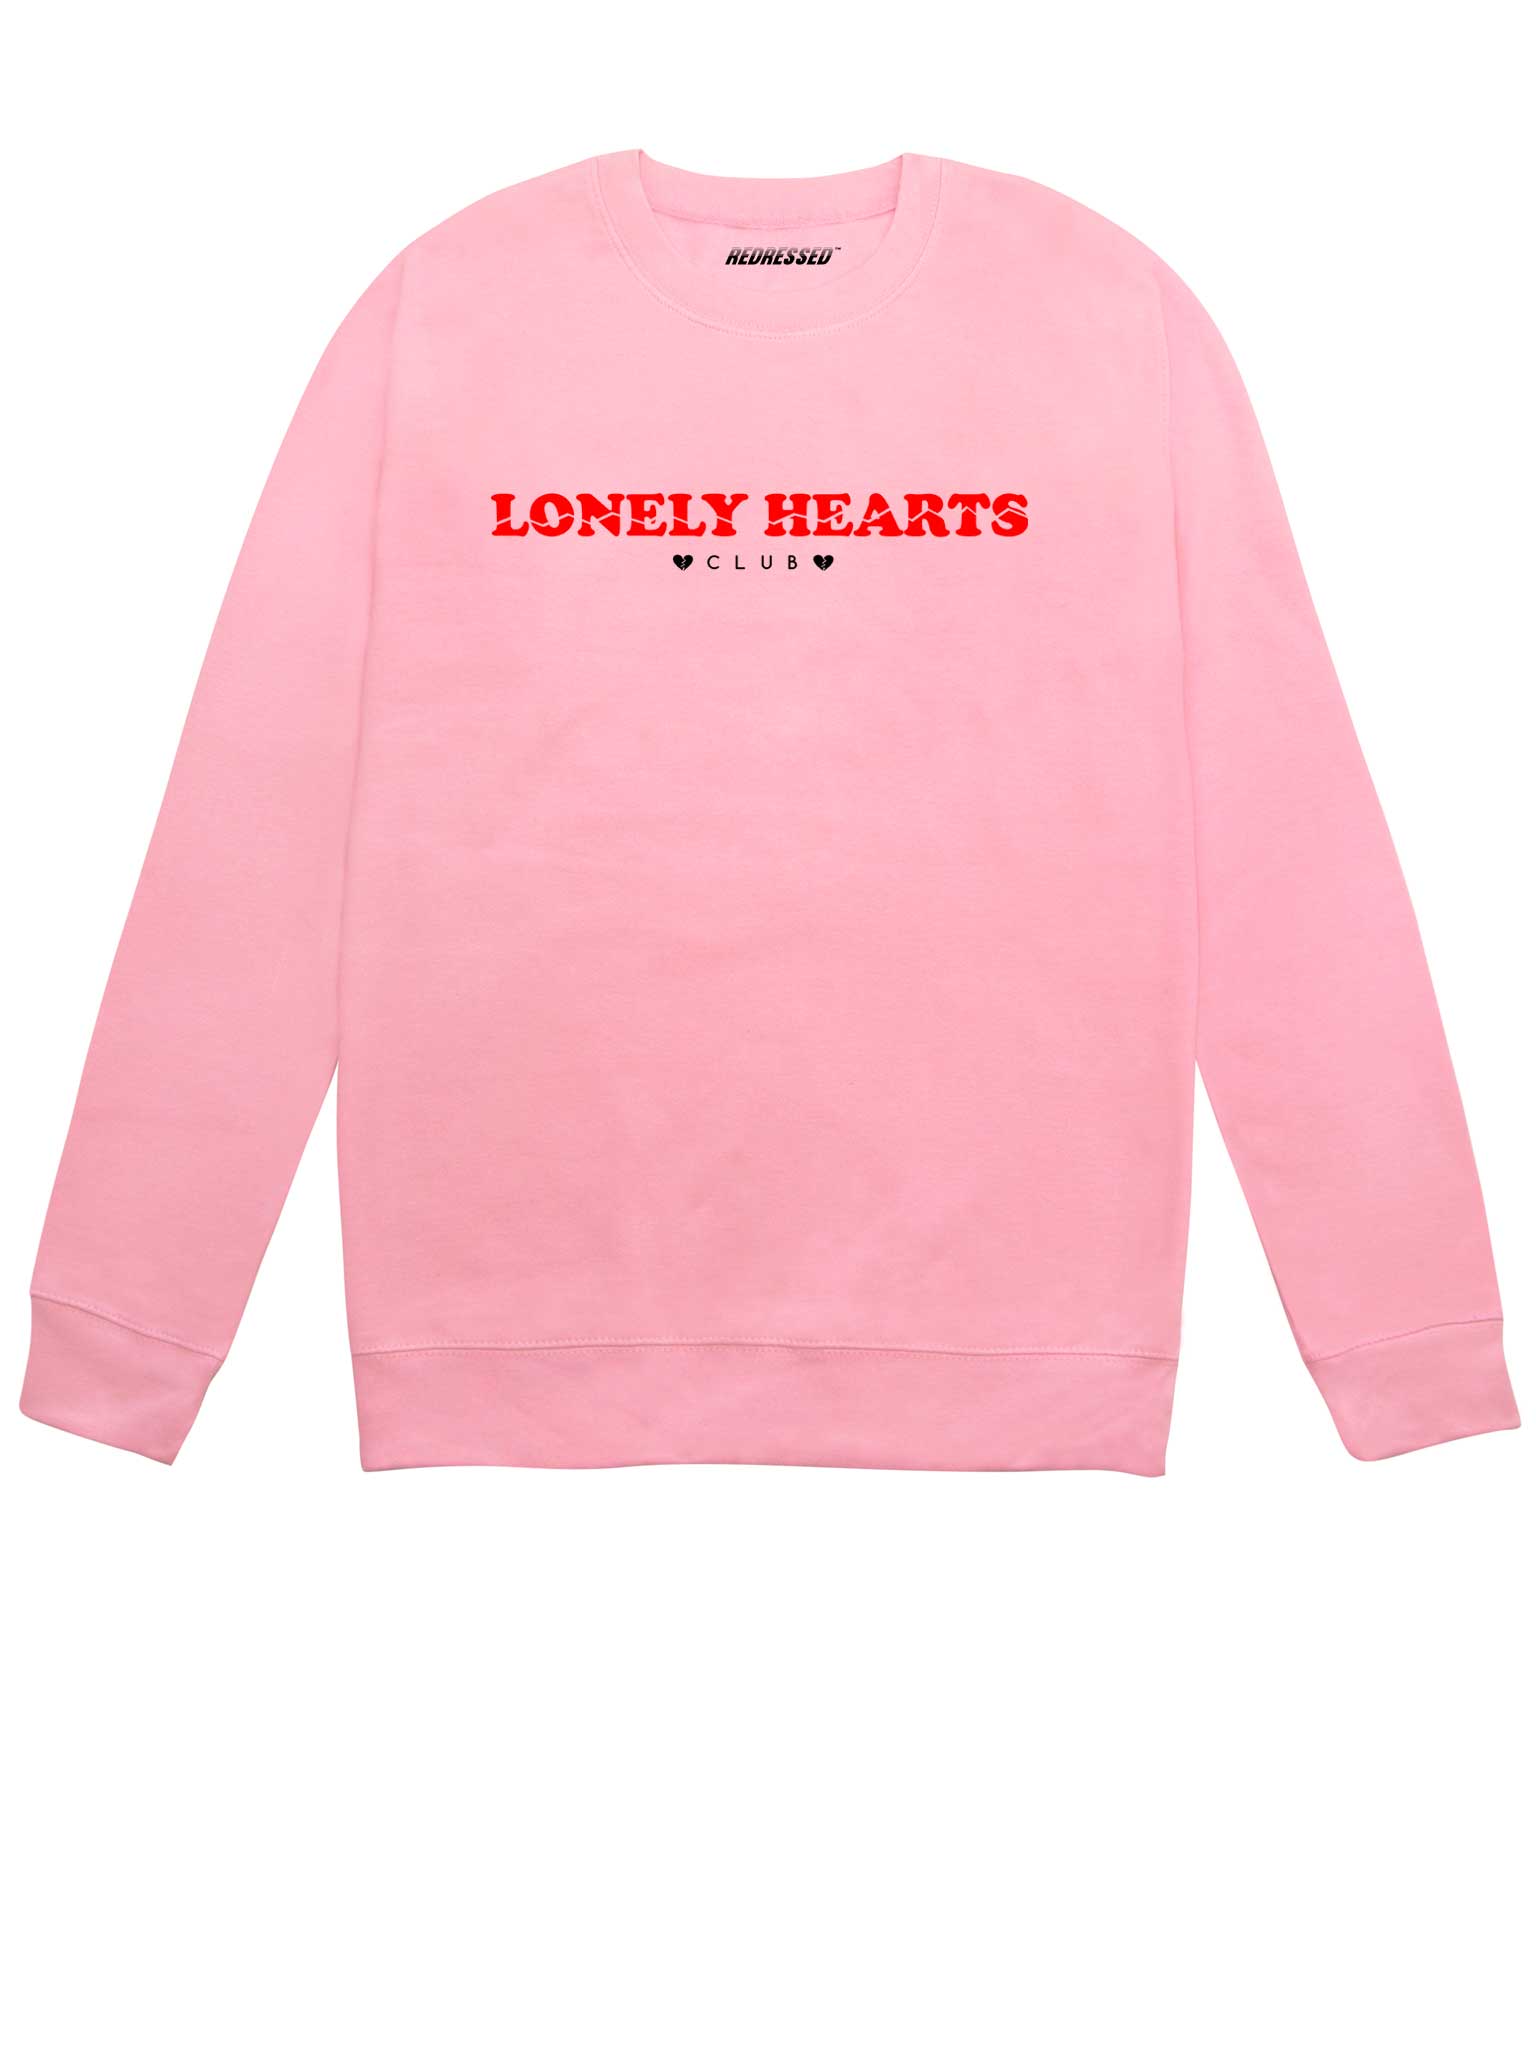 black hearts club hoodie